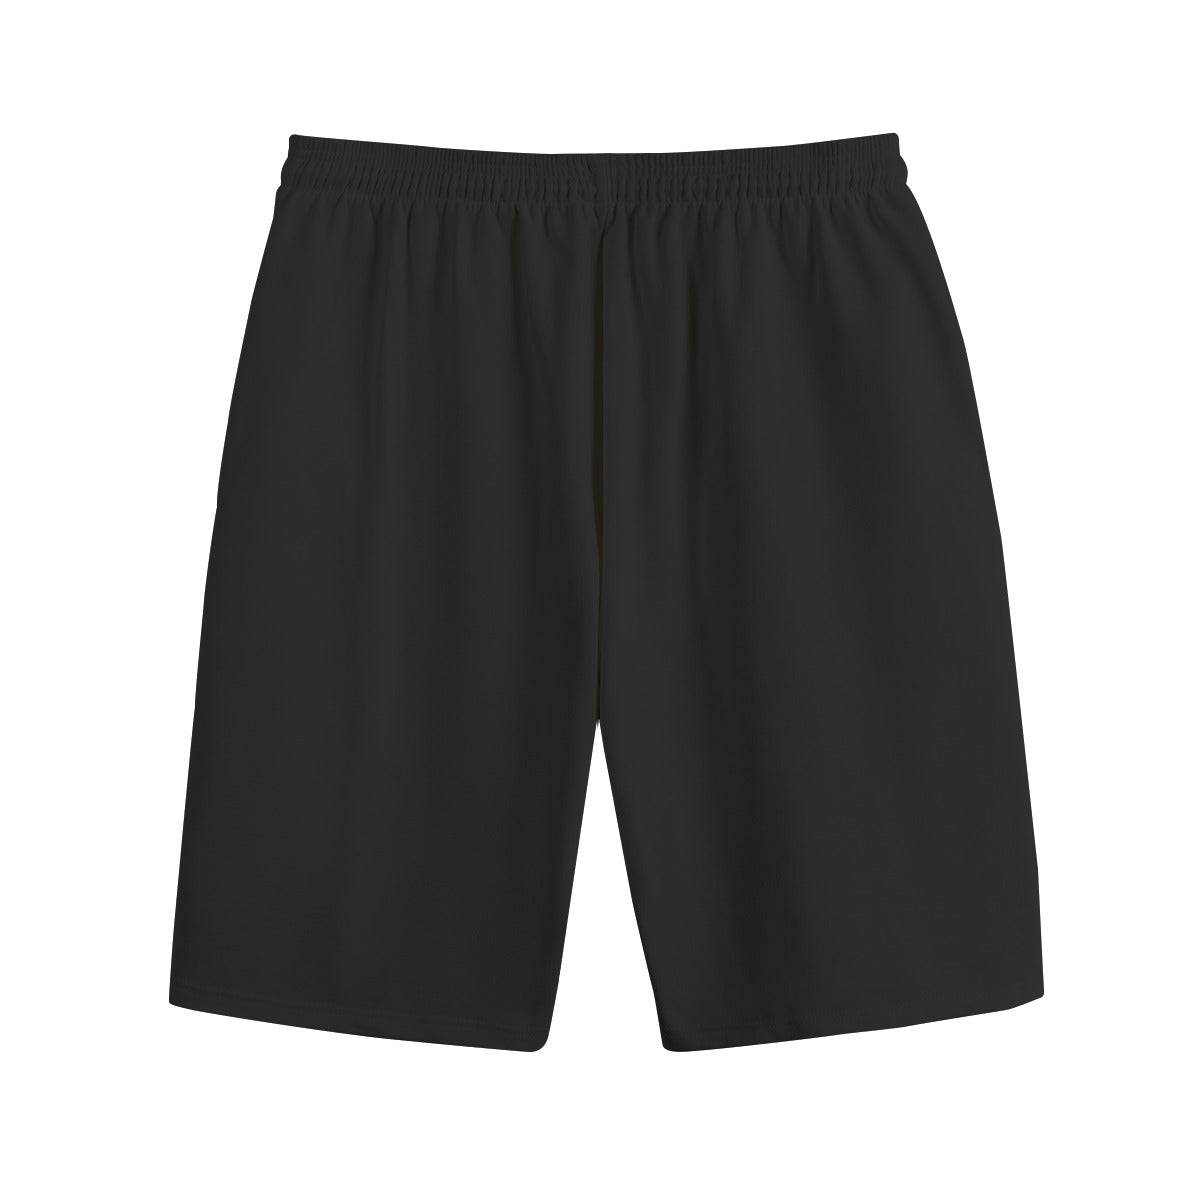 AM&IS Men's Black Shorts | 100% Cotton